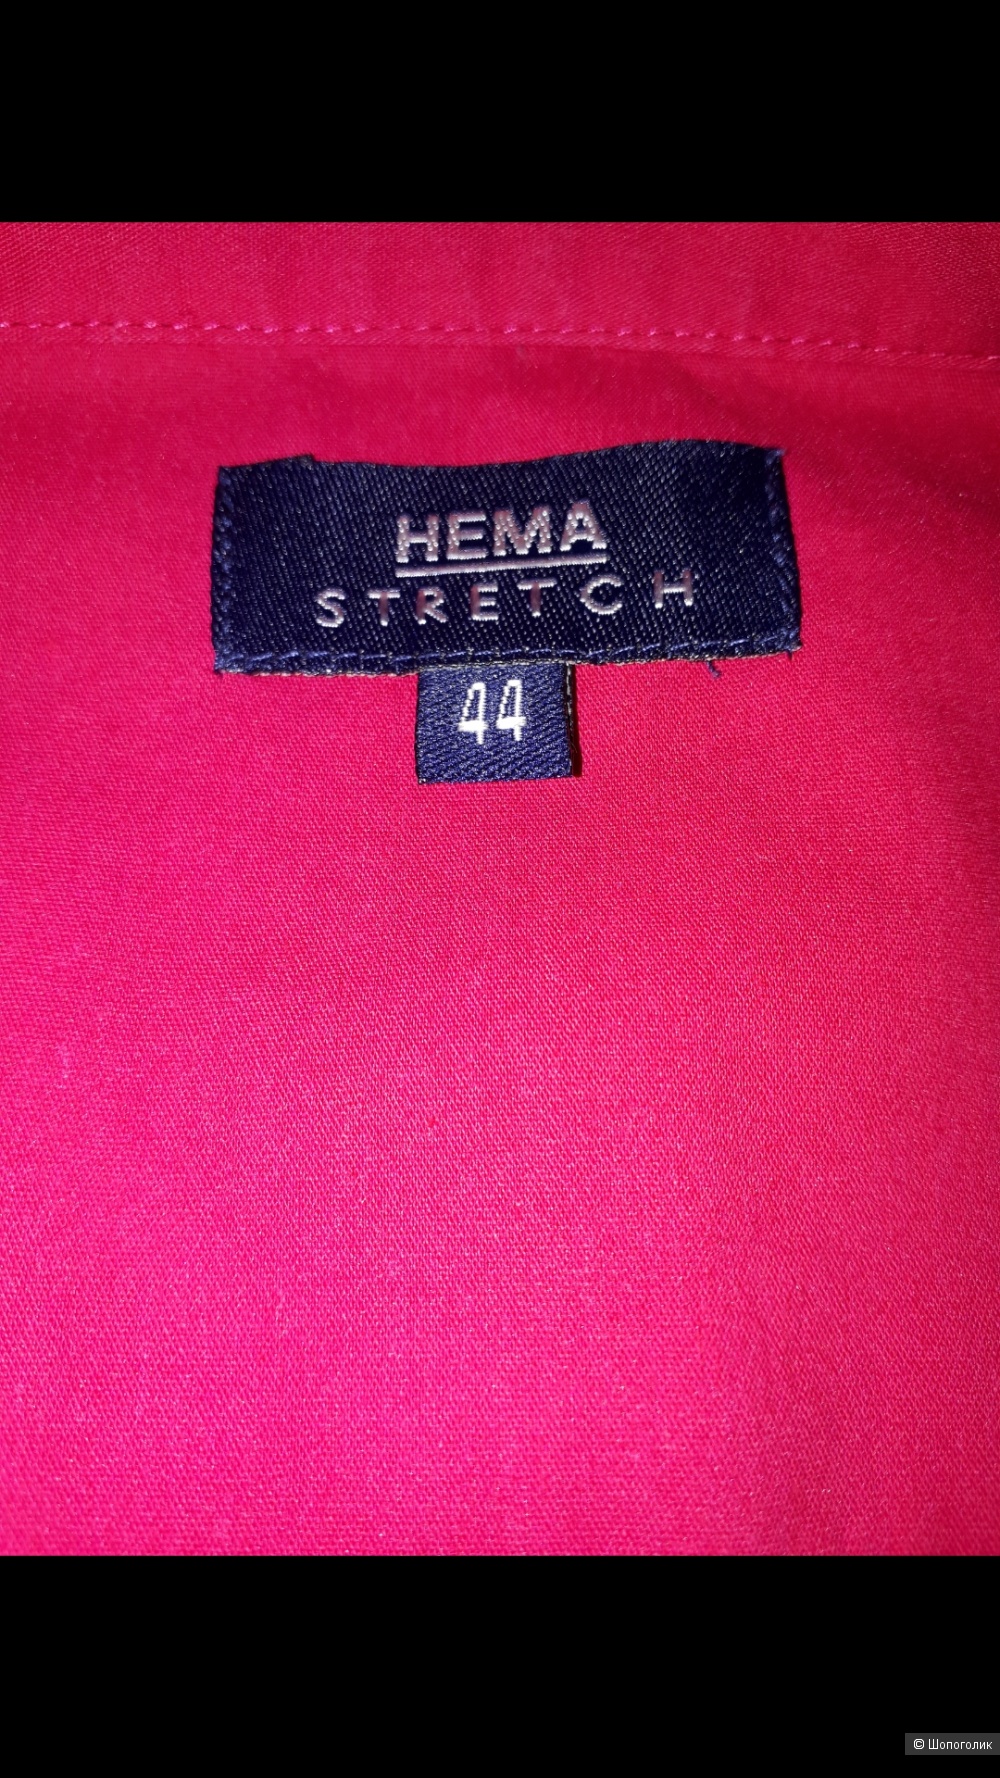 Рубашка Hema 44 евро р-р